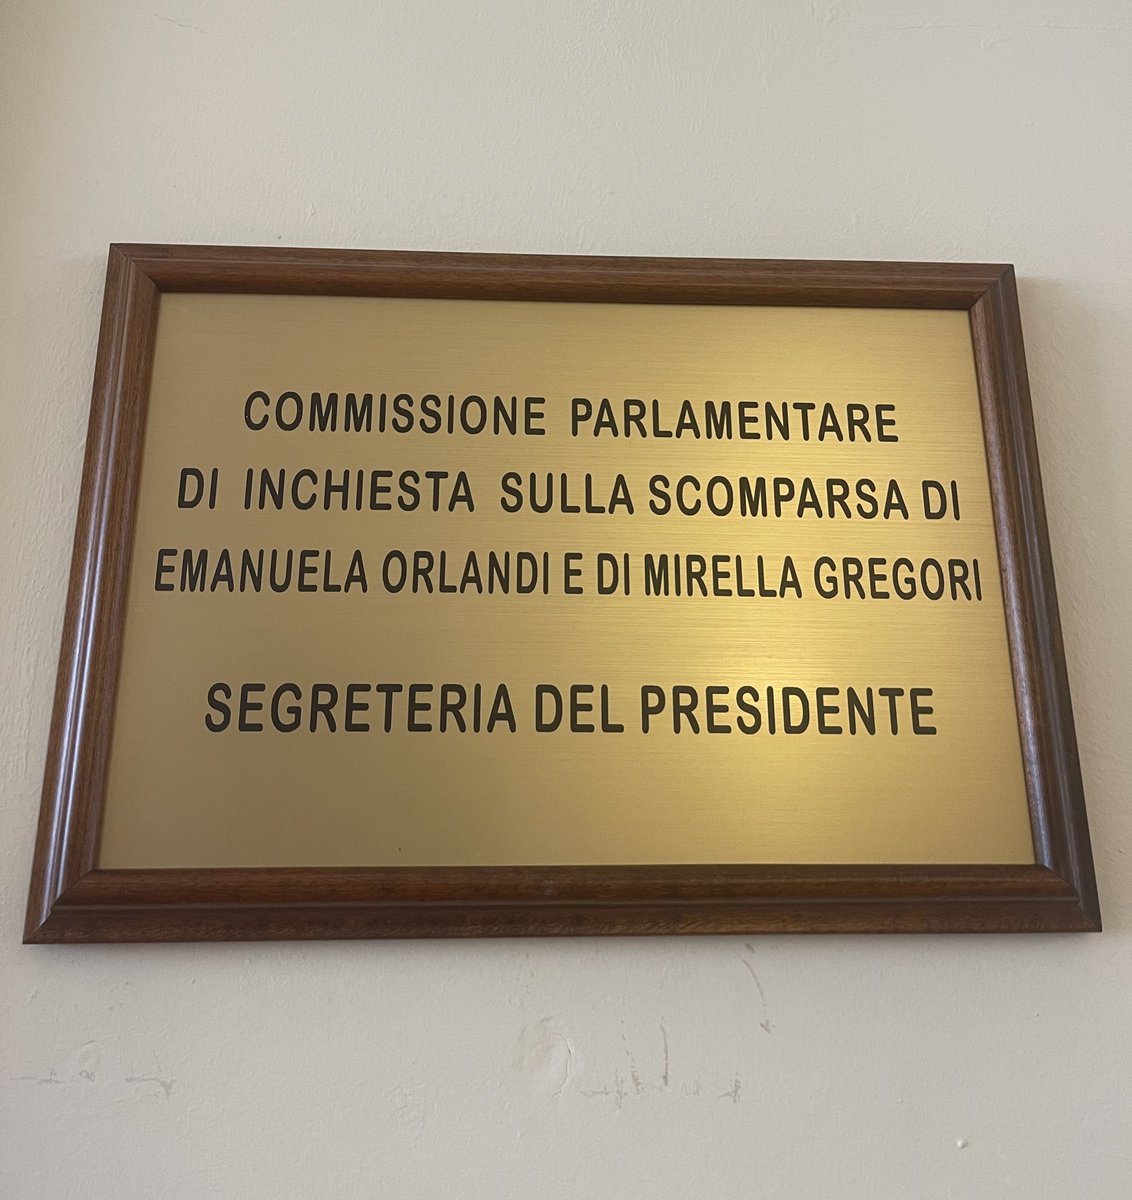 🔵Al via la Commissione Parlamentare di Inchiesta sulla scomparsa di Emanuela Orlandi e di Mirella Gregori. In audizione oggi i familiari delle due ragazze. @FratellidItalia